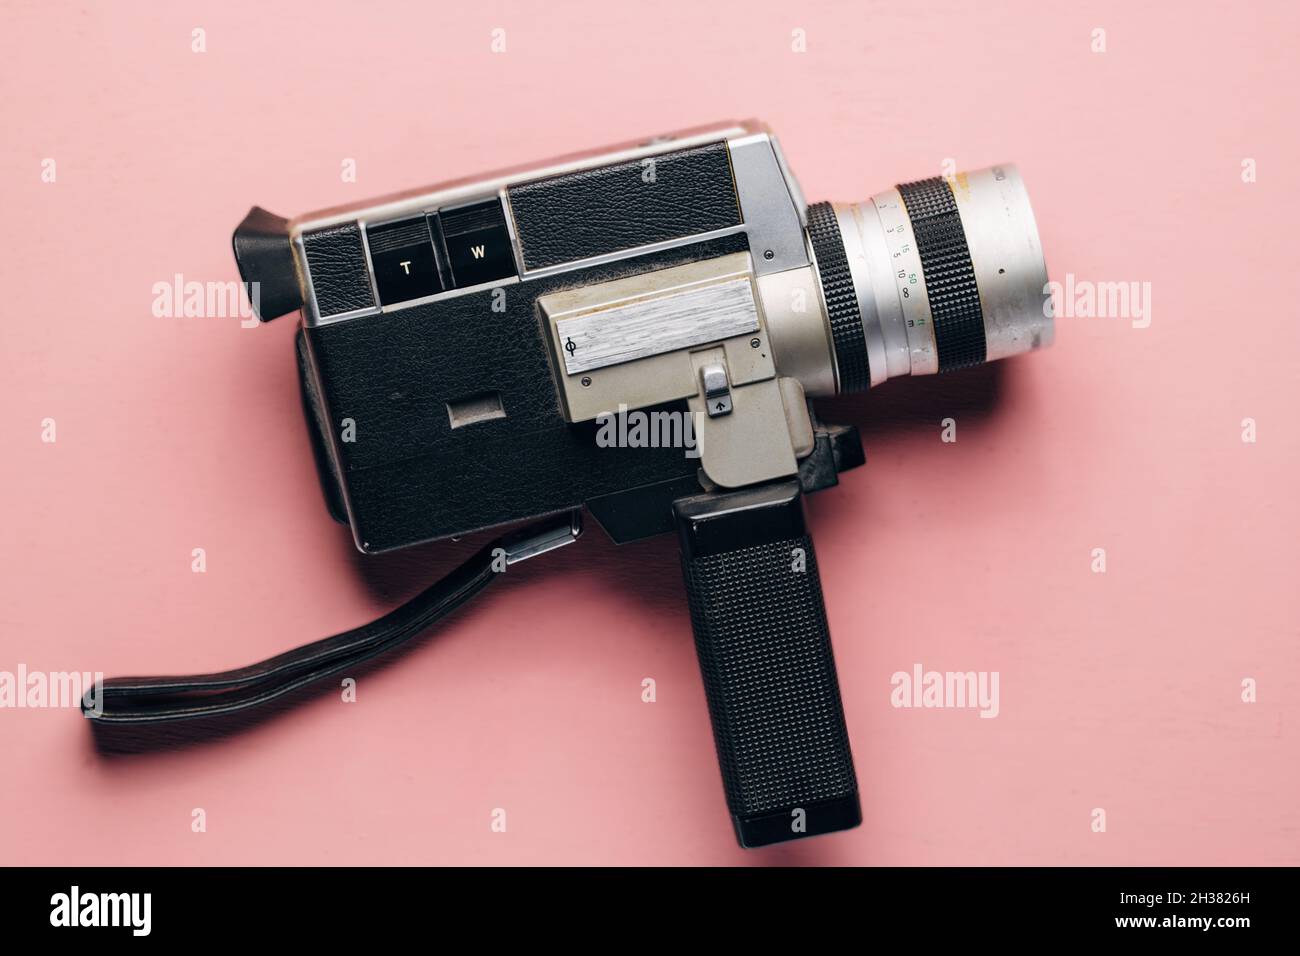 Vintage Super 8 Kamera auf einem rosa Hintergrund. Konzept des Vlogging. Retro-Kamera, feminine Bloggerin. Stockfoto